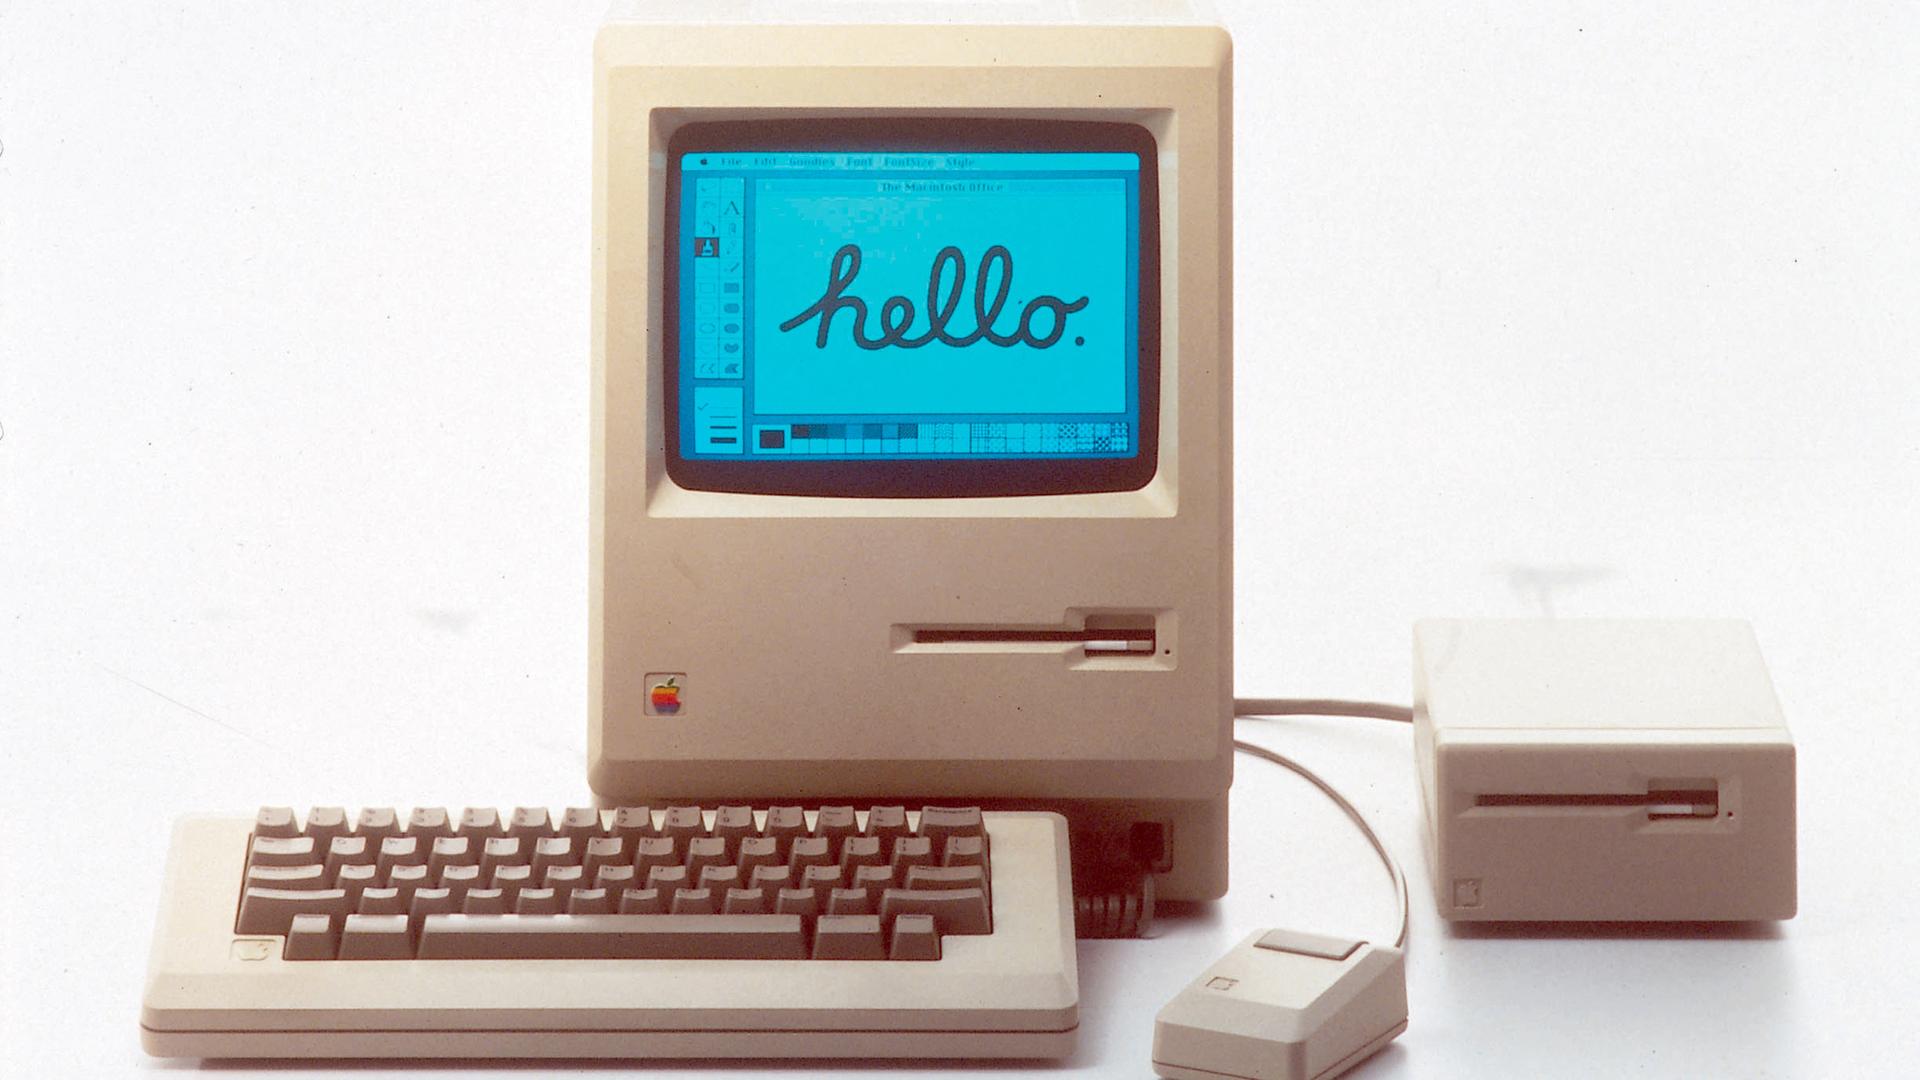 Der erste Mac wurde vor 25 Jahren - am 24.01.1984 - von Apple-Mitbegründer Steve Jobs in Cupertino (US-Bundesstaat Kalifornien) der Öffentlichkeit vorgestell